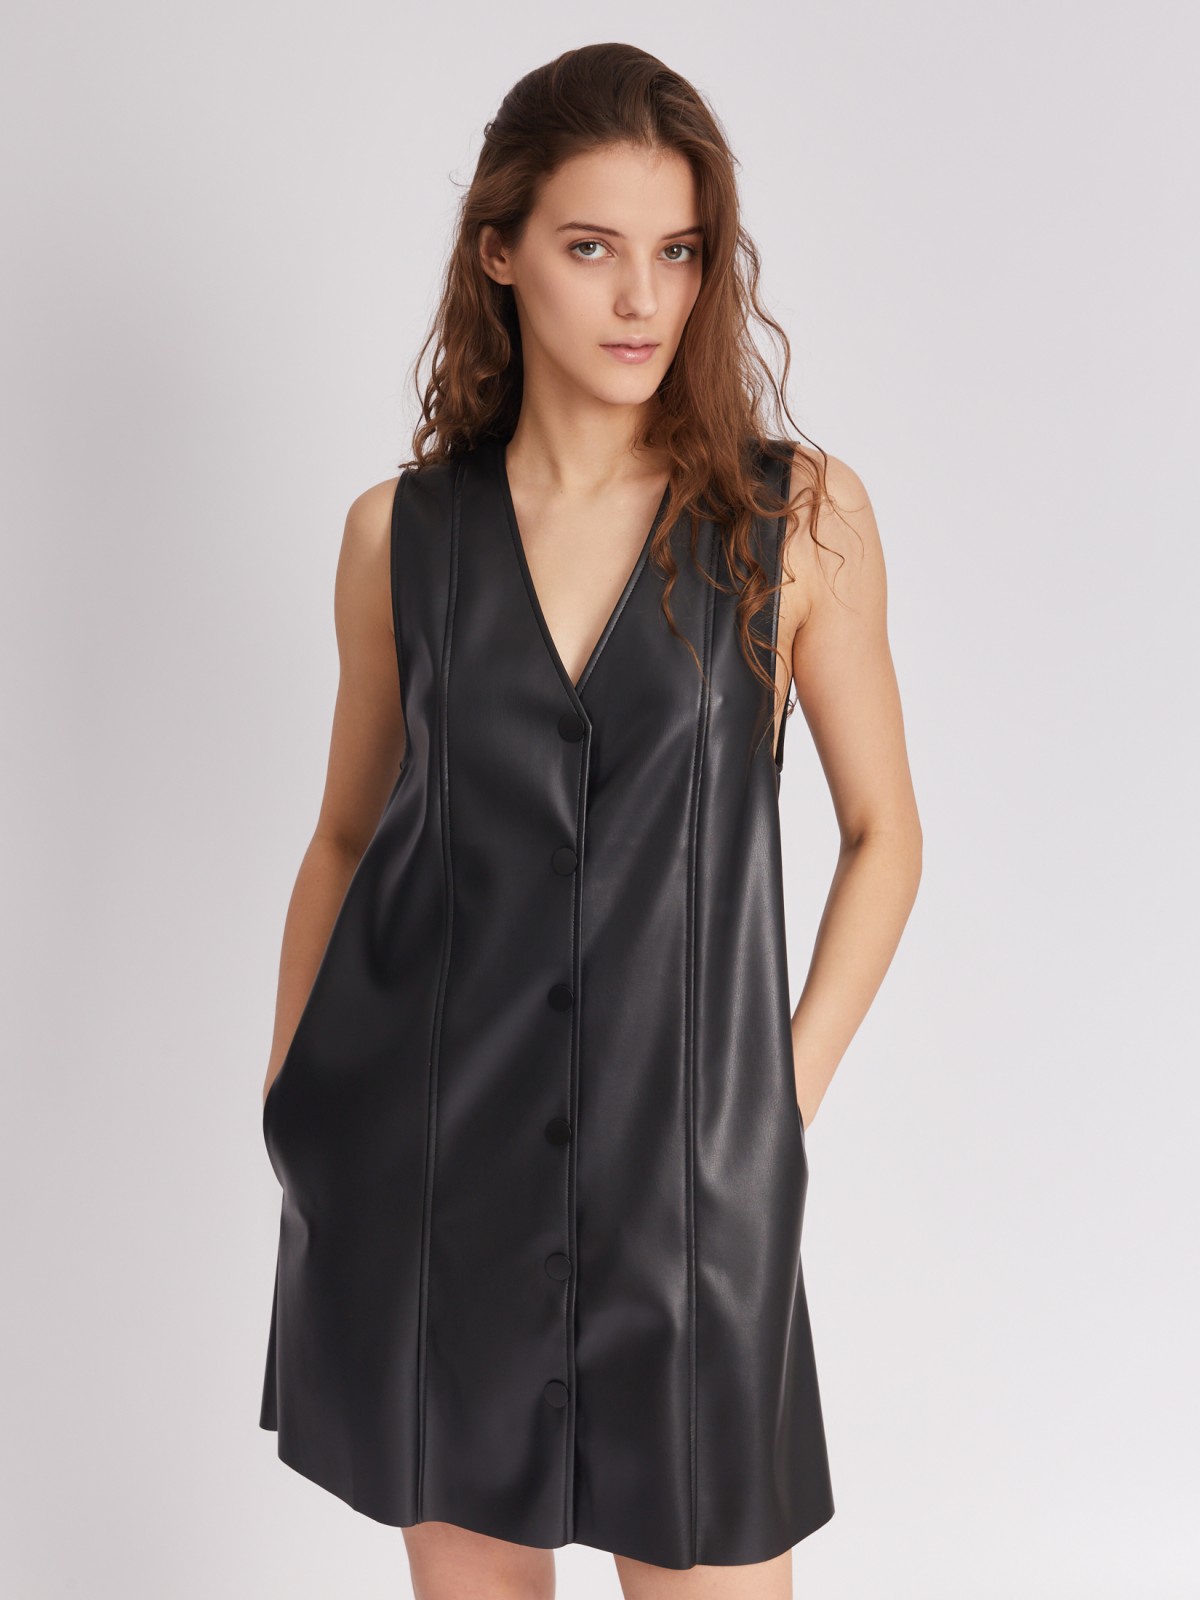 Платье-сарафан длины мини без рукавов из экокожи на кнопках zolla 223338259051, цвет черный, размер XS